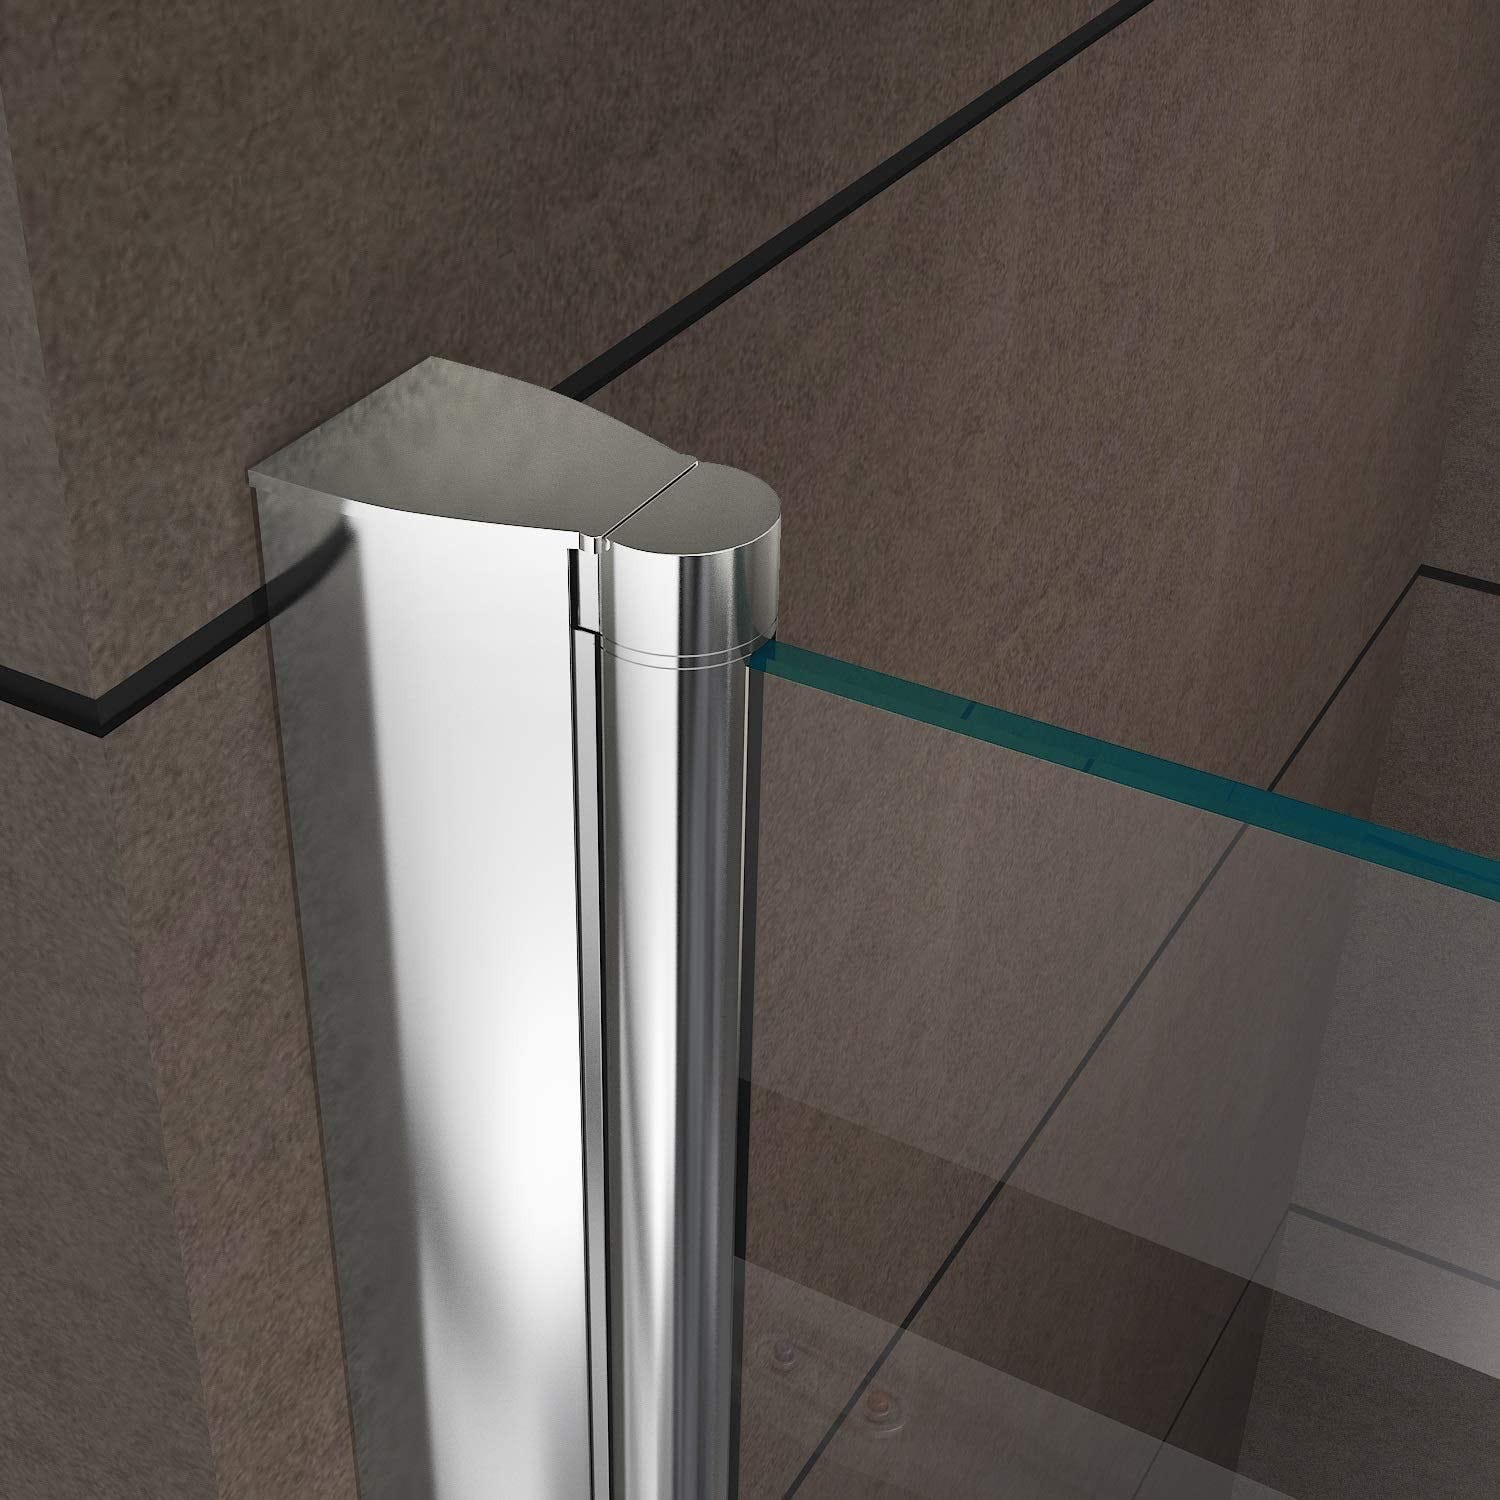 GINA Porte de douche H 180 cm largeur réglable 92 à 96 cm verre semi-opaque 3